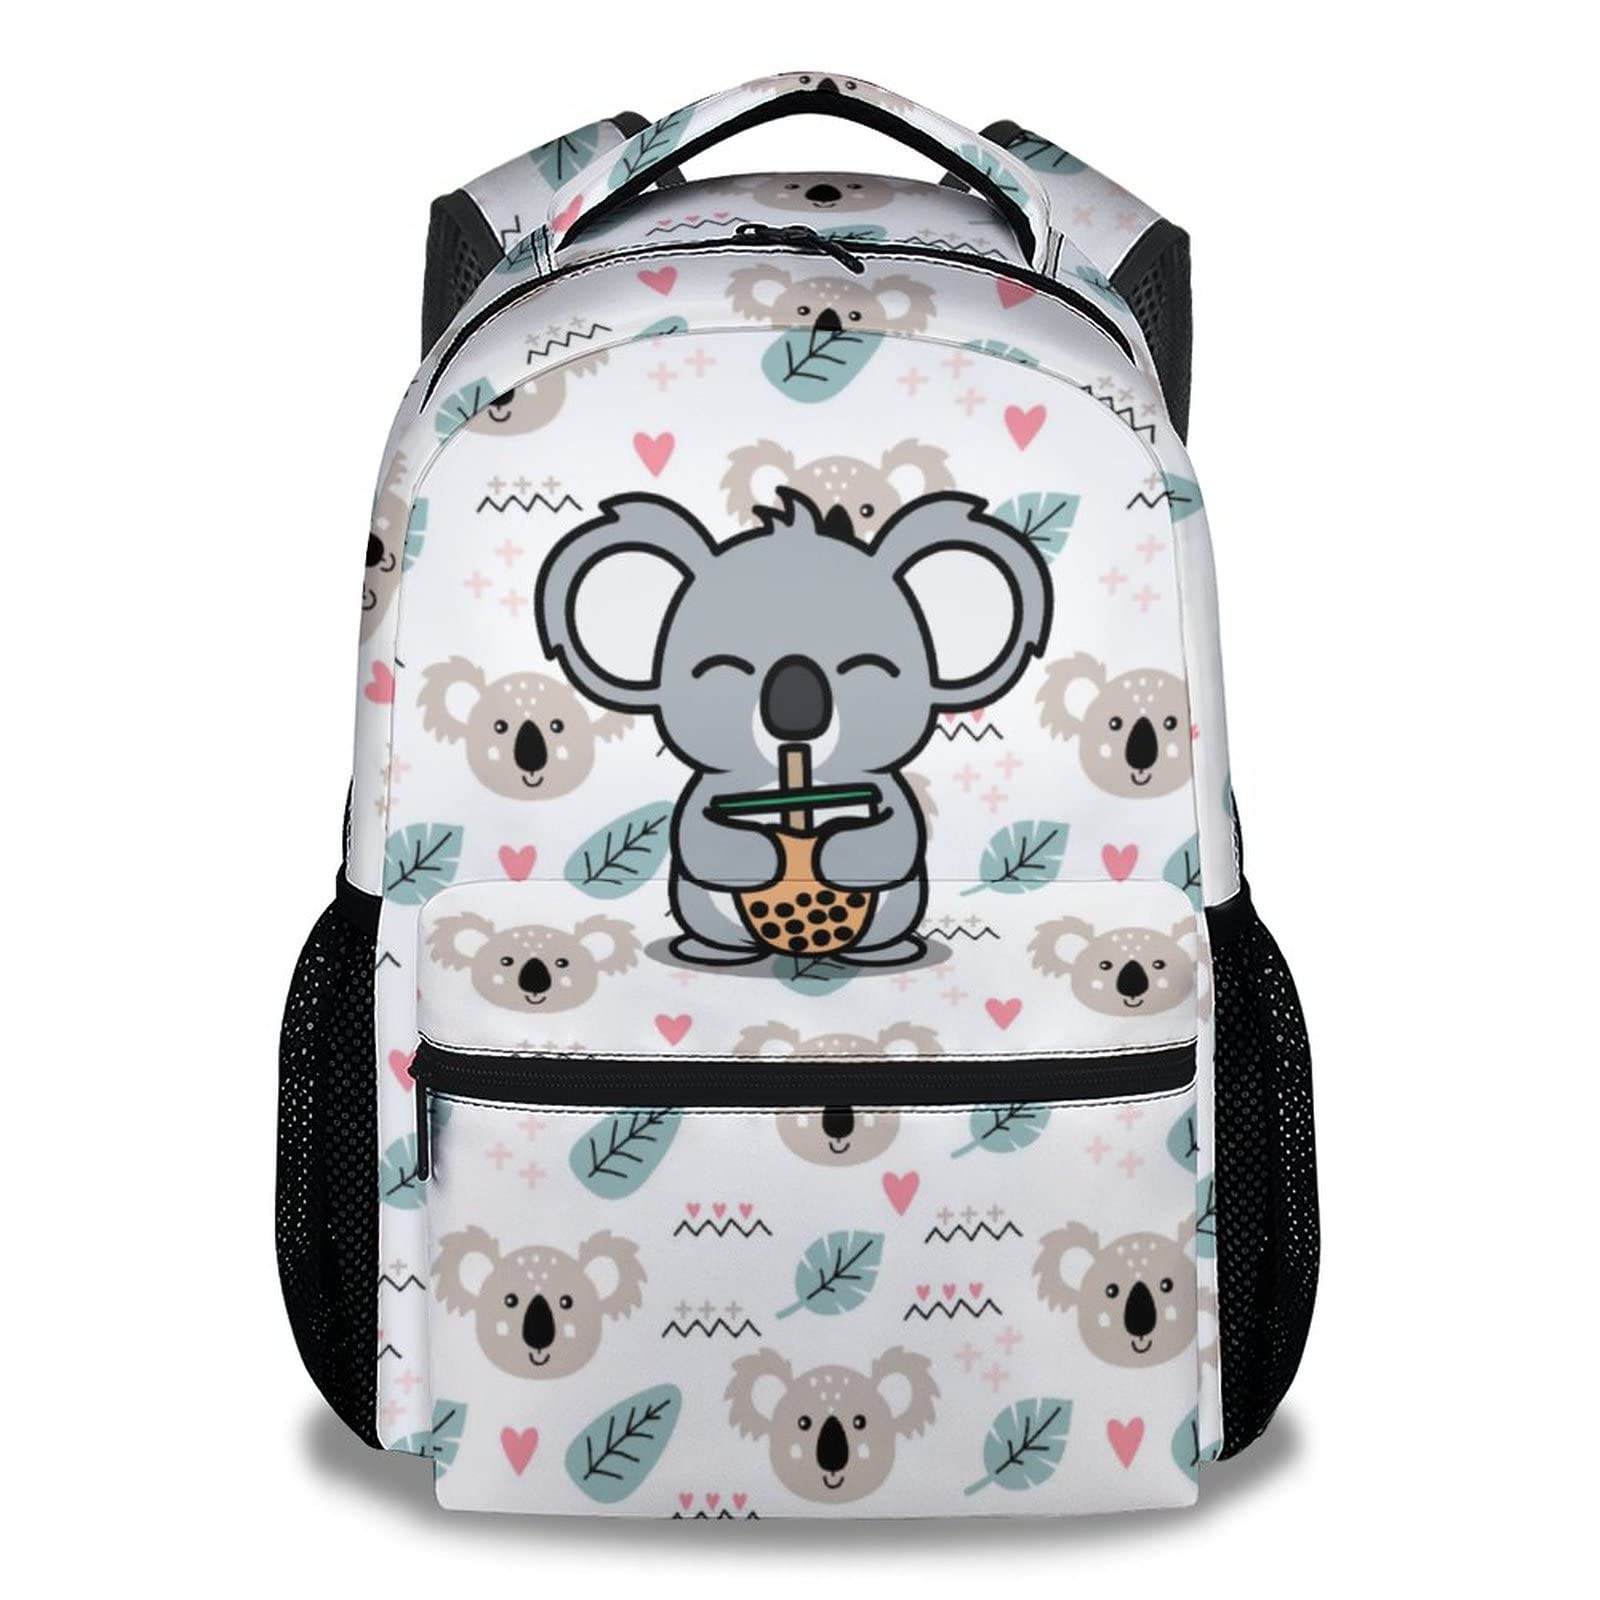 CUNEXTTIME Koala Backpack for Girls Boys, 16 Inch Cute Backpack for School, White Lightweight Durable Bookbag for Kids